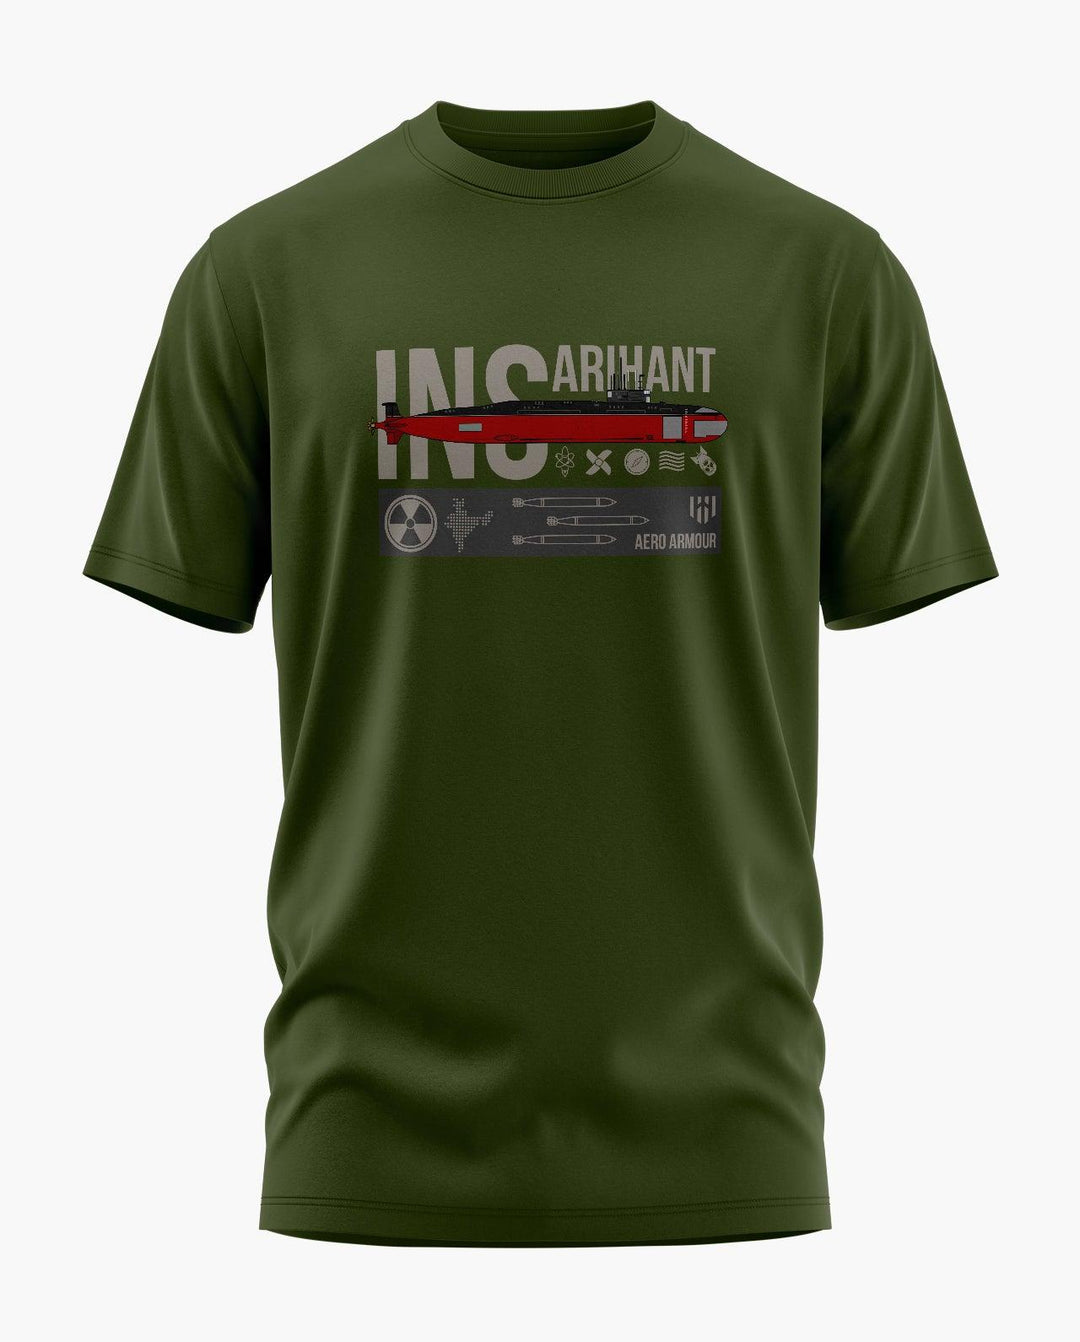 INS Arihant Graphical T-Shirt - Aero Armour